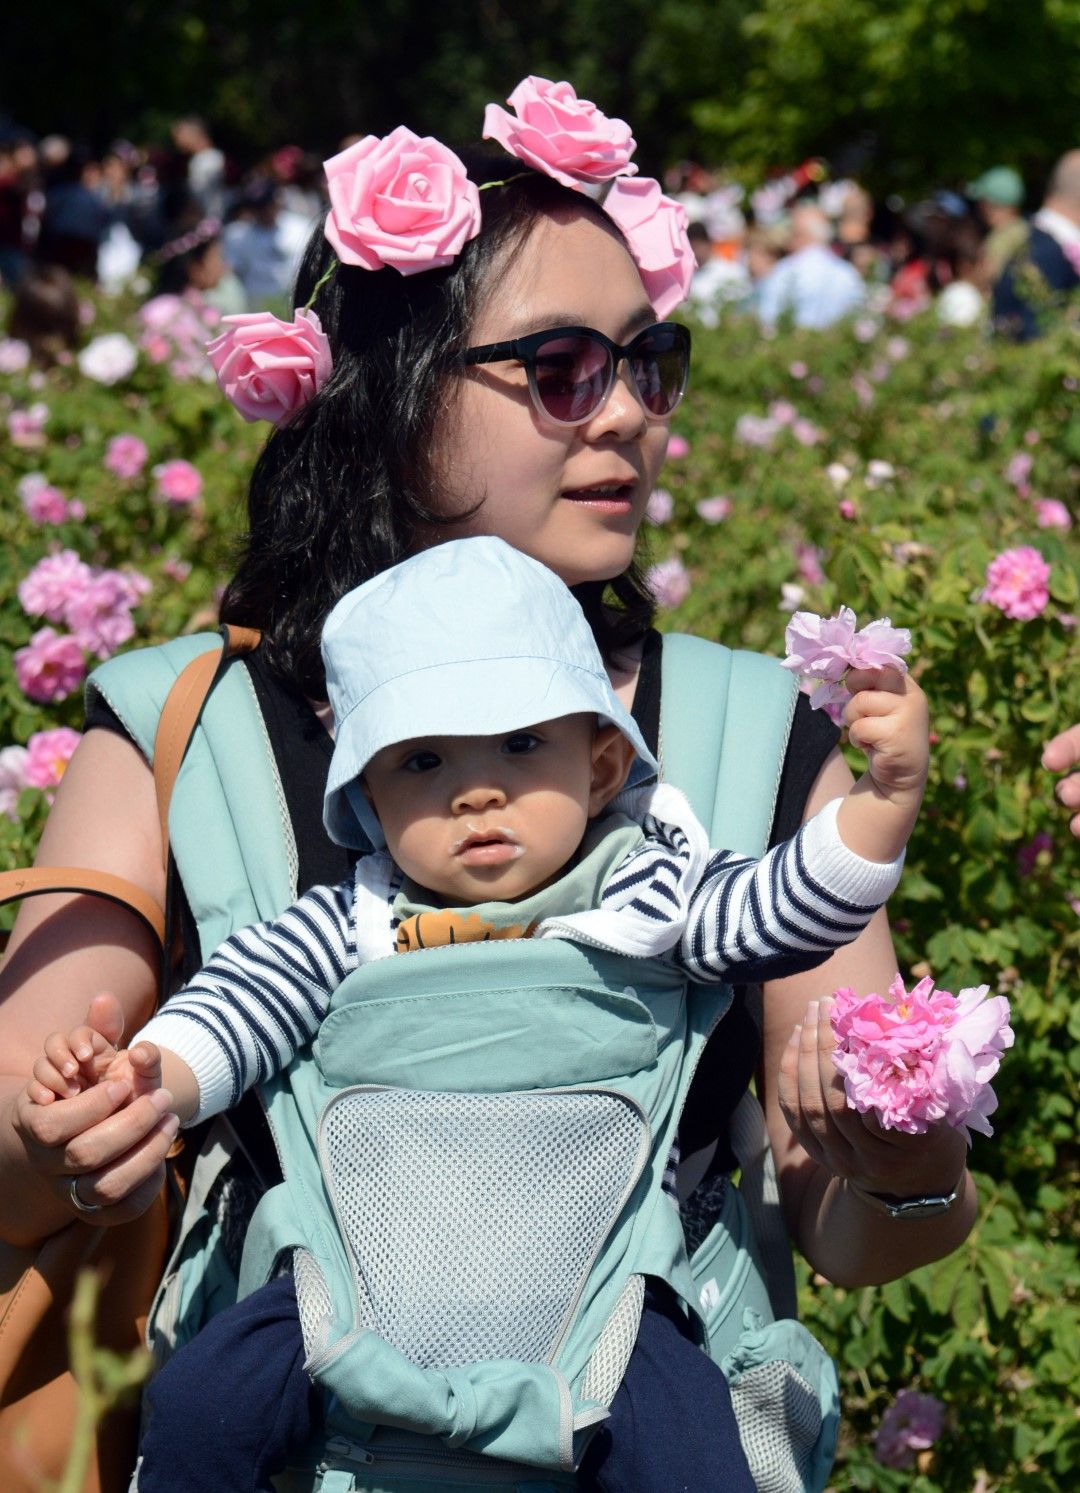  Казанлък (6 юни 2021) Автентичния обред розобер край Казанлък, събра посетители и туристи от целия свят в розовите масиви край града. Събитието е част от 118-ия Празник на розата 